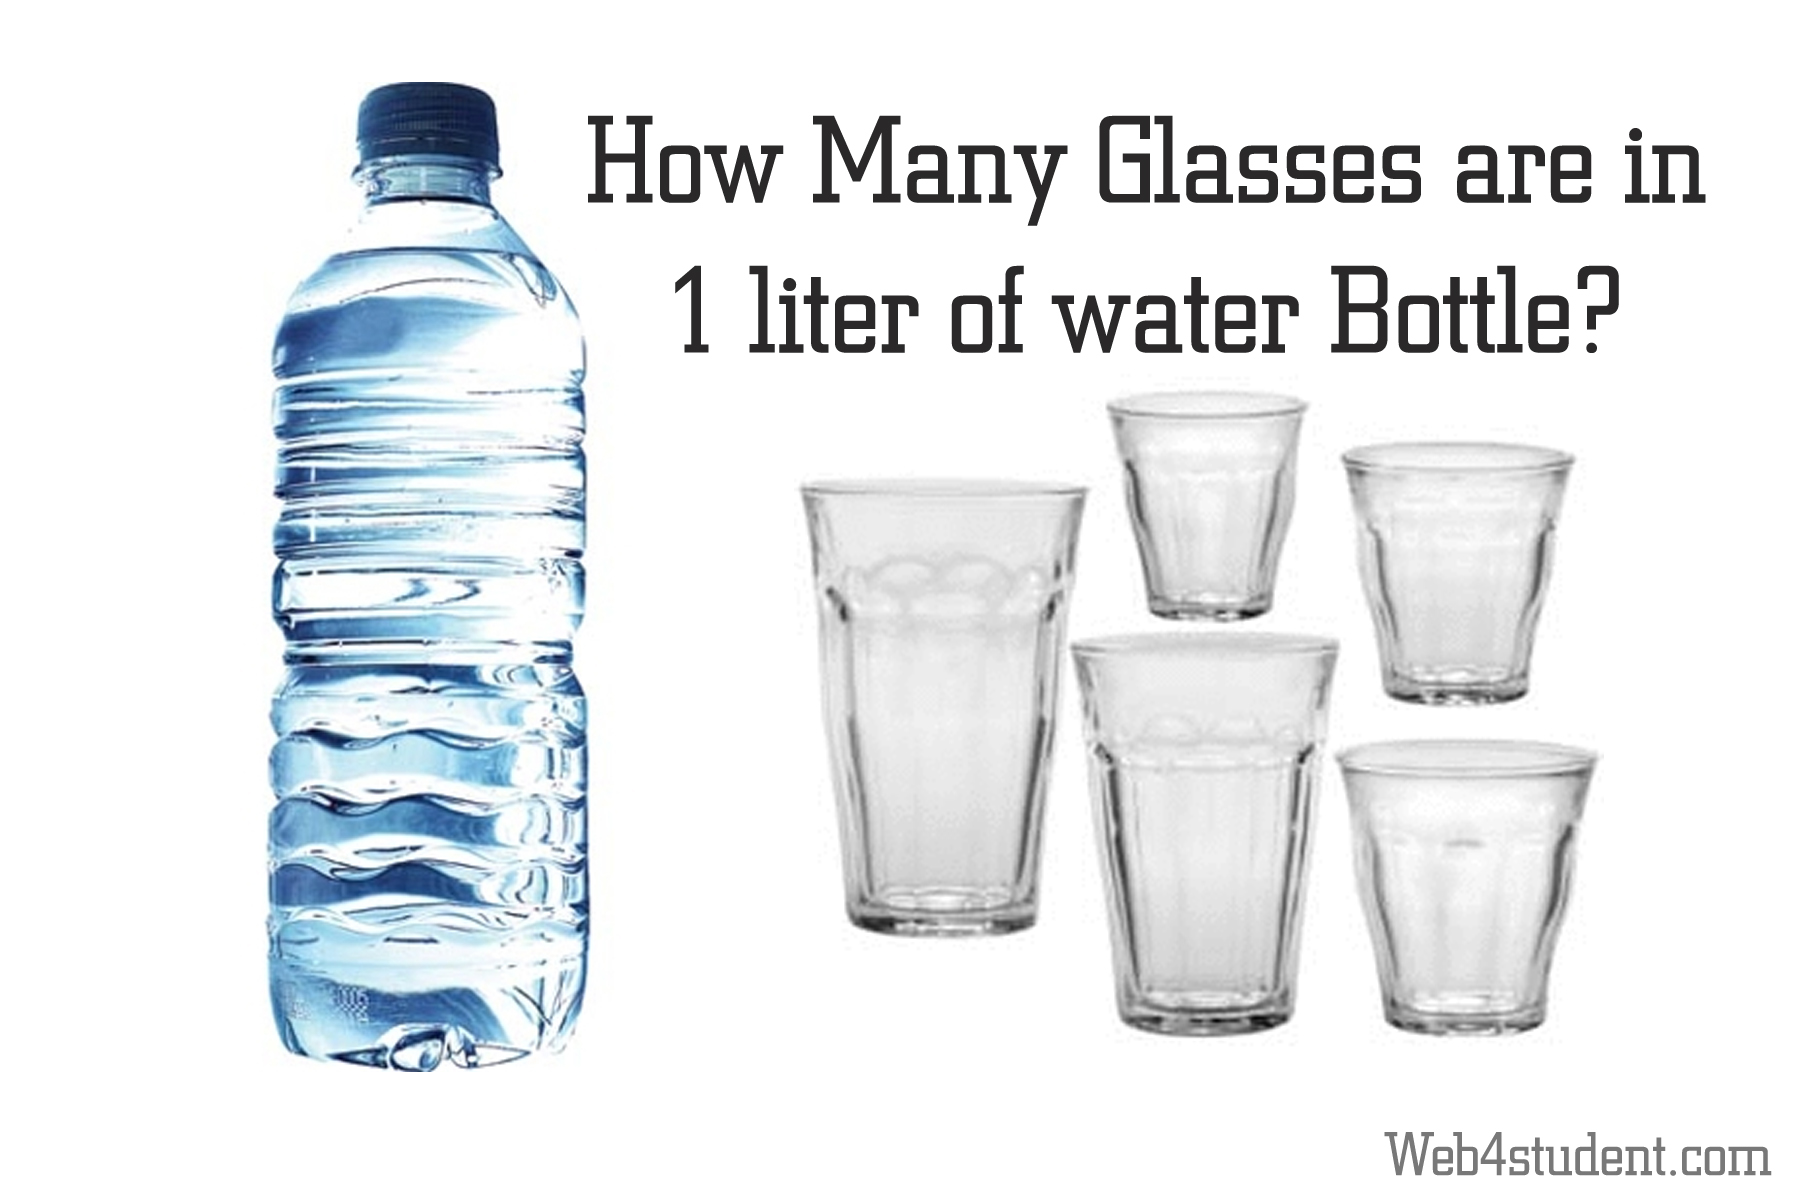 В 11 2 литра воды. 2 Литра воды в стаканах. Литр воды. 8 Унций воды. One Liter.